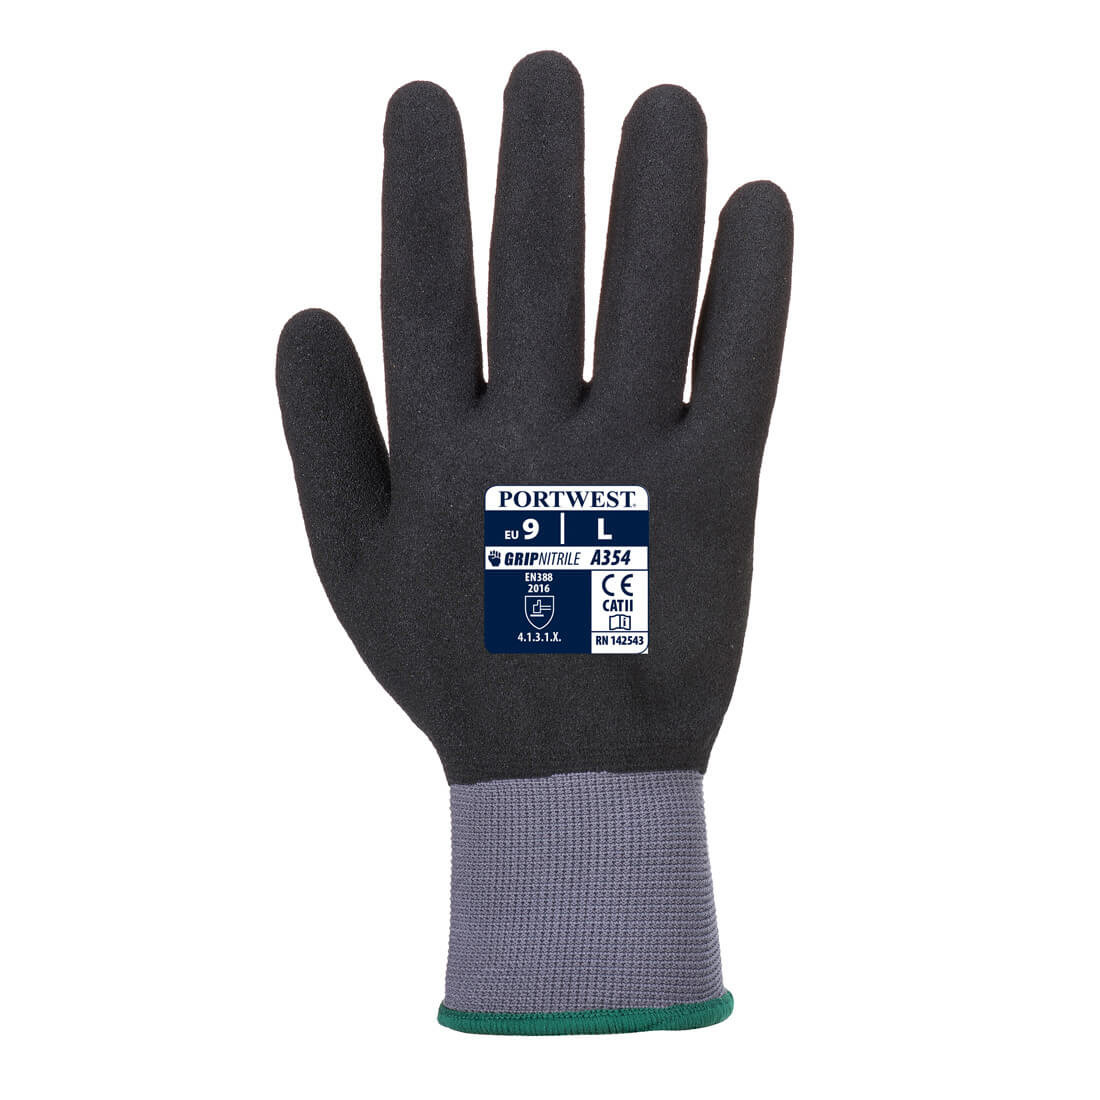 DermiFlex Ultra Pro Handschuh - PU/Nitrilk beschichtet - Arbeitschutz